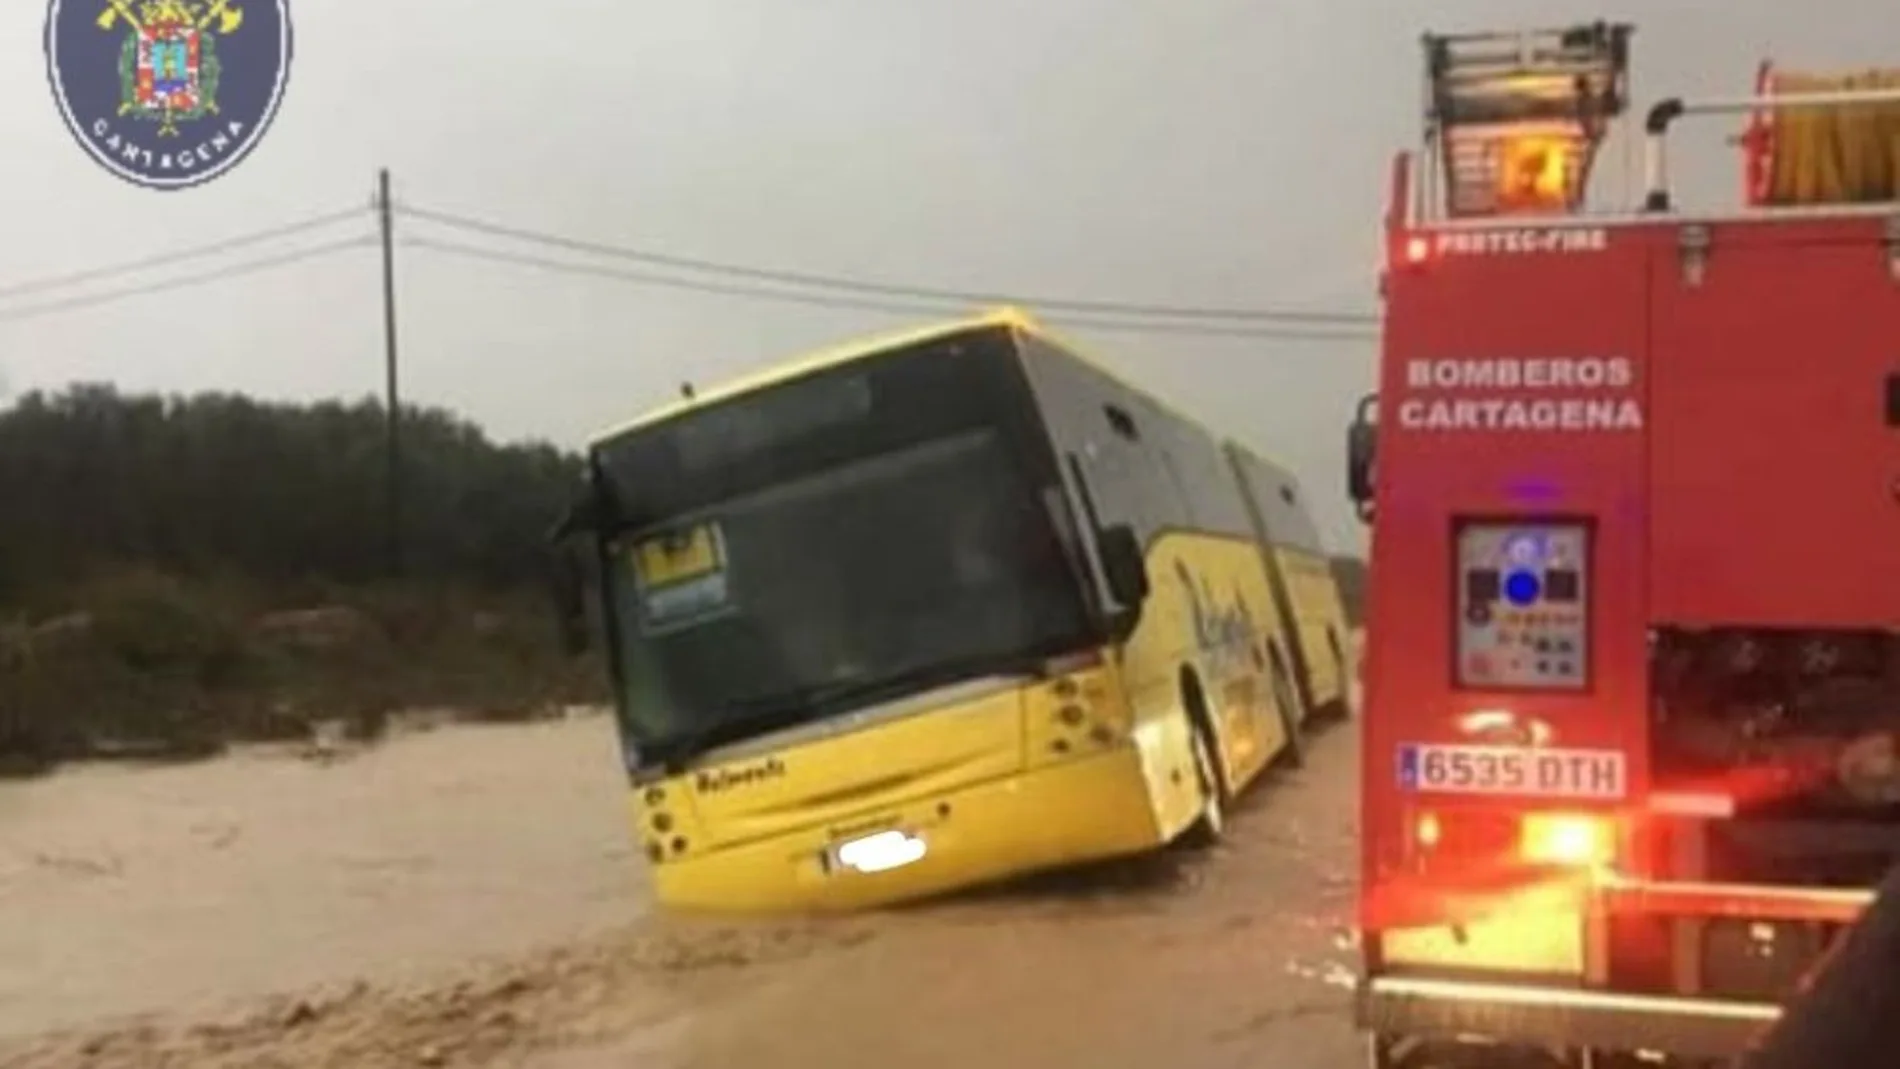 Noticias 1 Antena 3 (19-11-18) Los Bomberos rescatan a 70 escolares atrapados en un autobús por las fuertes lluvias en Cartagena